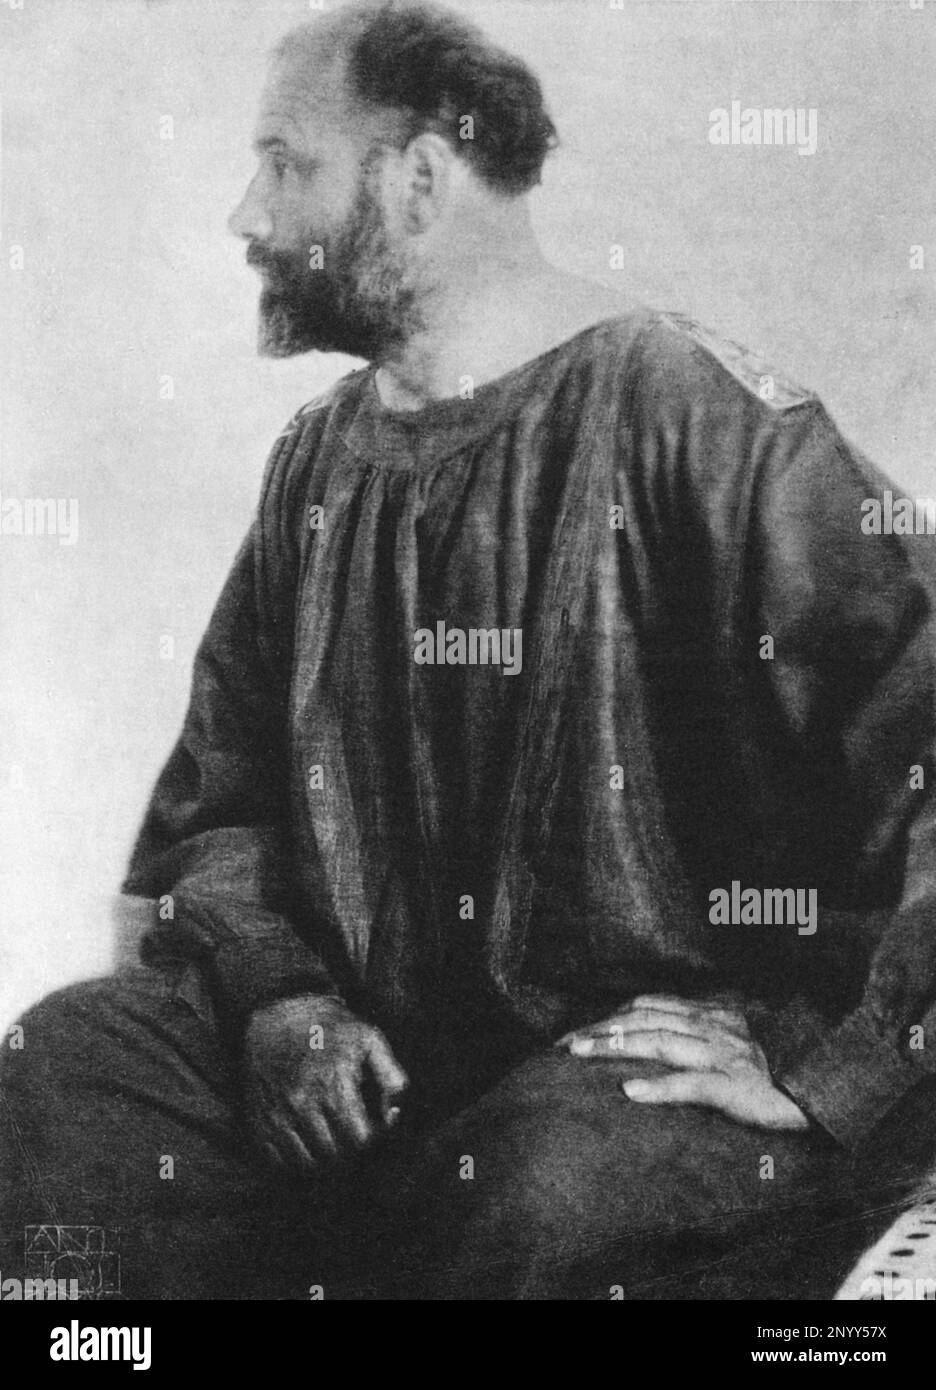 1914 : The secessinist austrian painter GUSTAV KLIMT ( 1862 - 1918 ), portrait by Anton Josef Trcka   - SECESSION - SECESSIONE VIENNESE - VISUAL ARTS - ARTI VISIVE - Arte  - ritratto - portrait - pittore - profilo - profile   ----  Archivio GBB Stock Photo